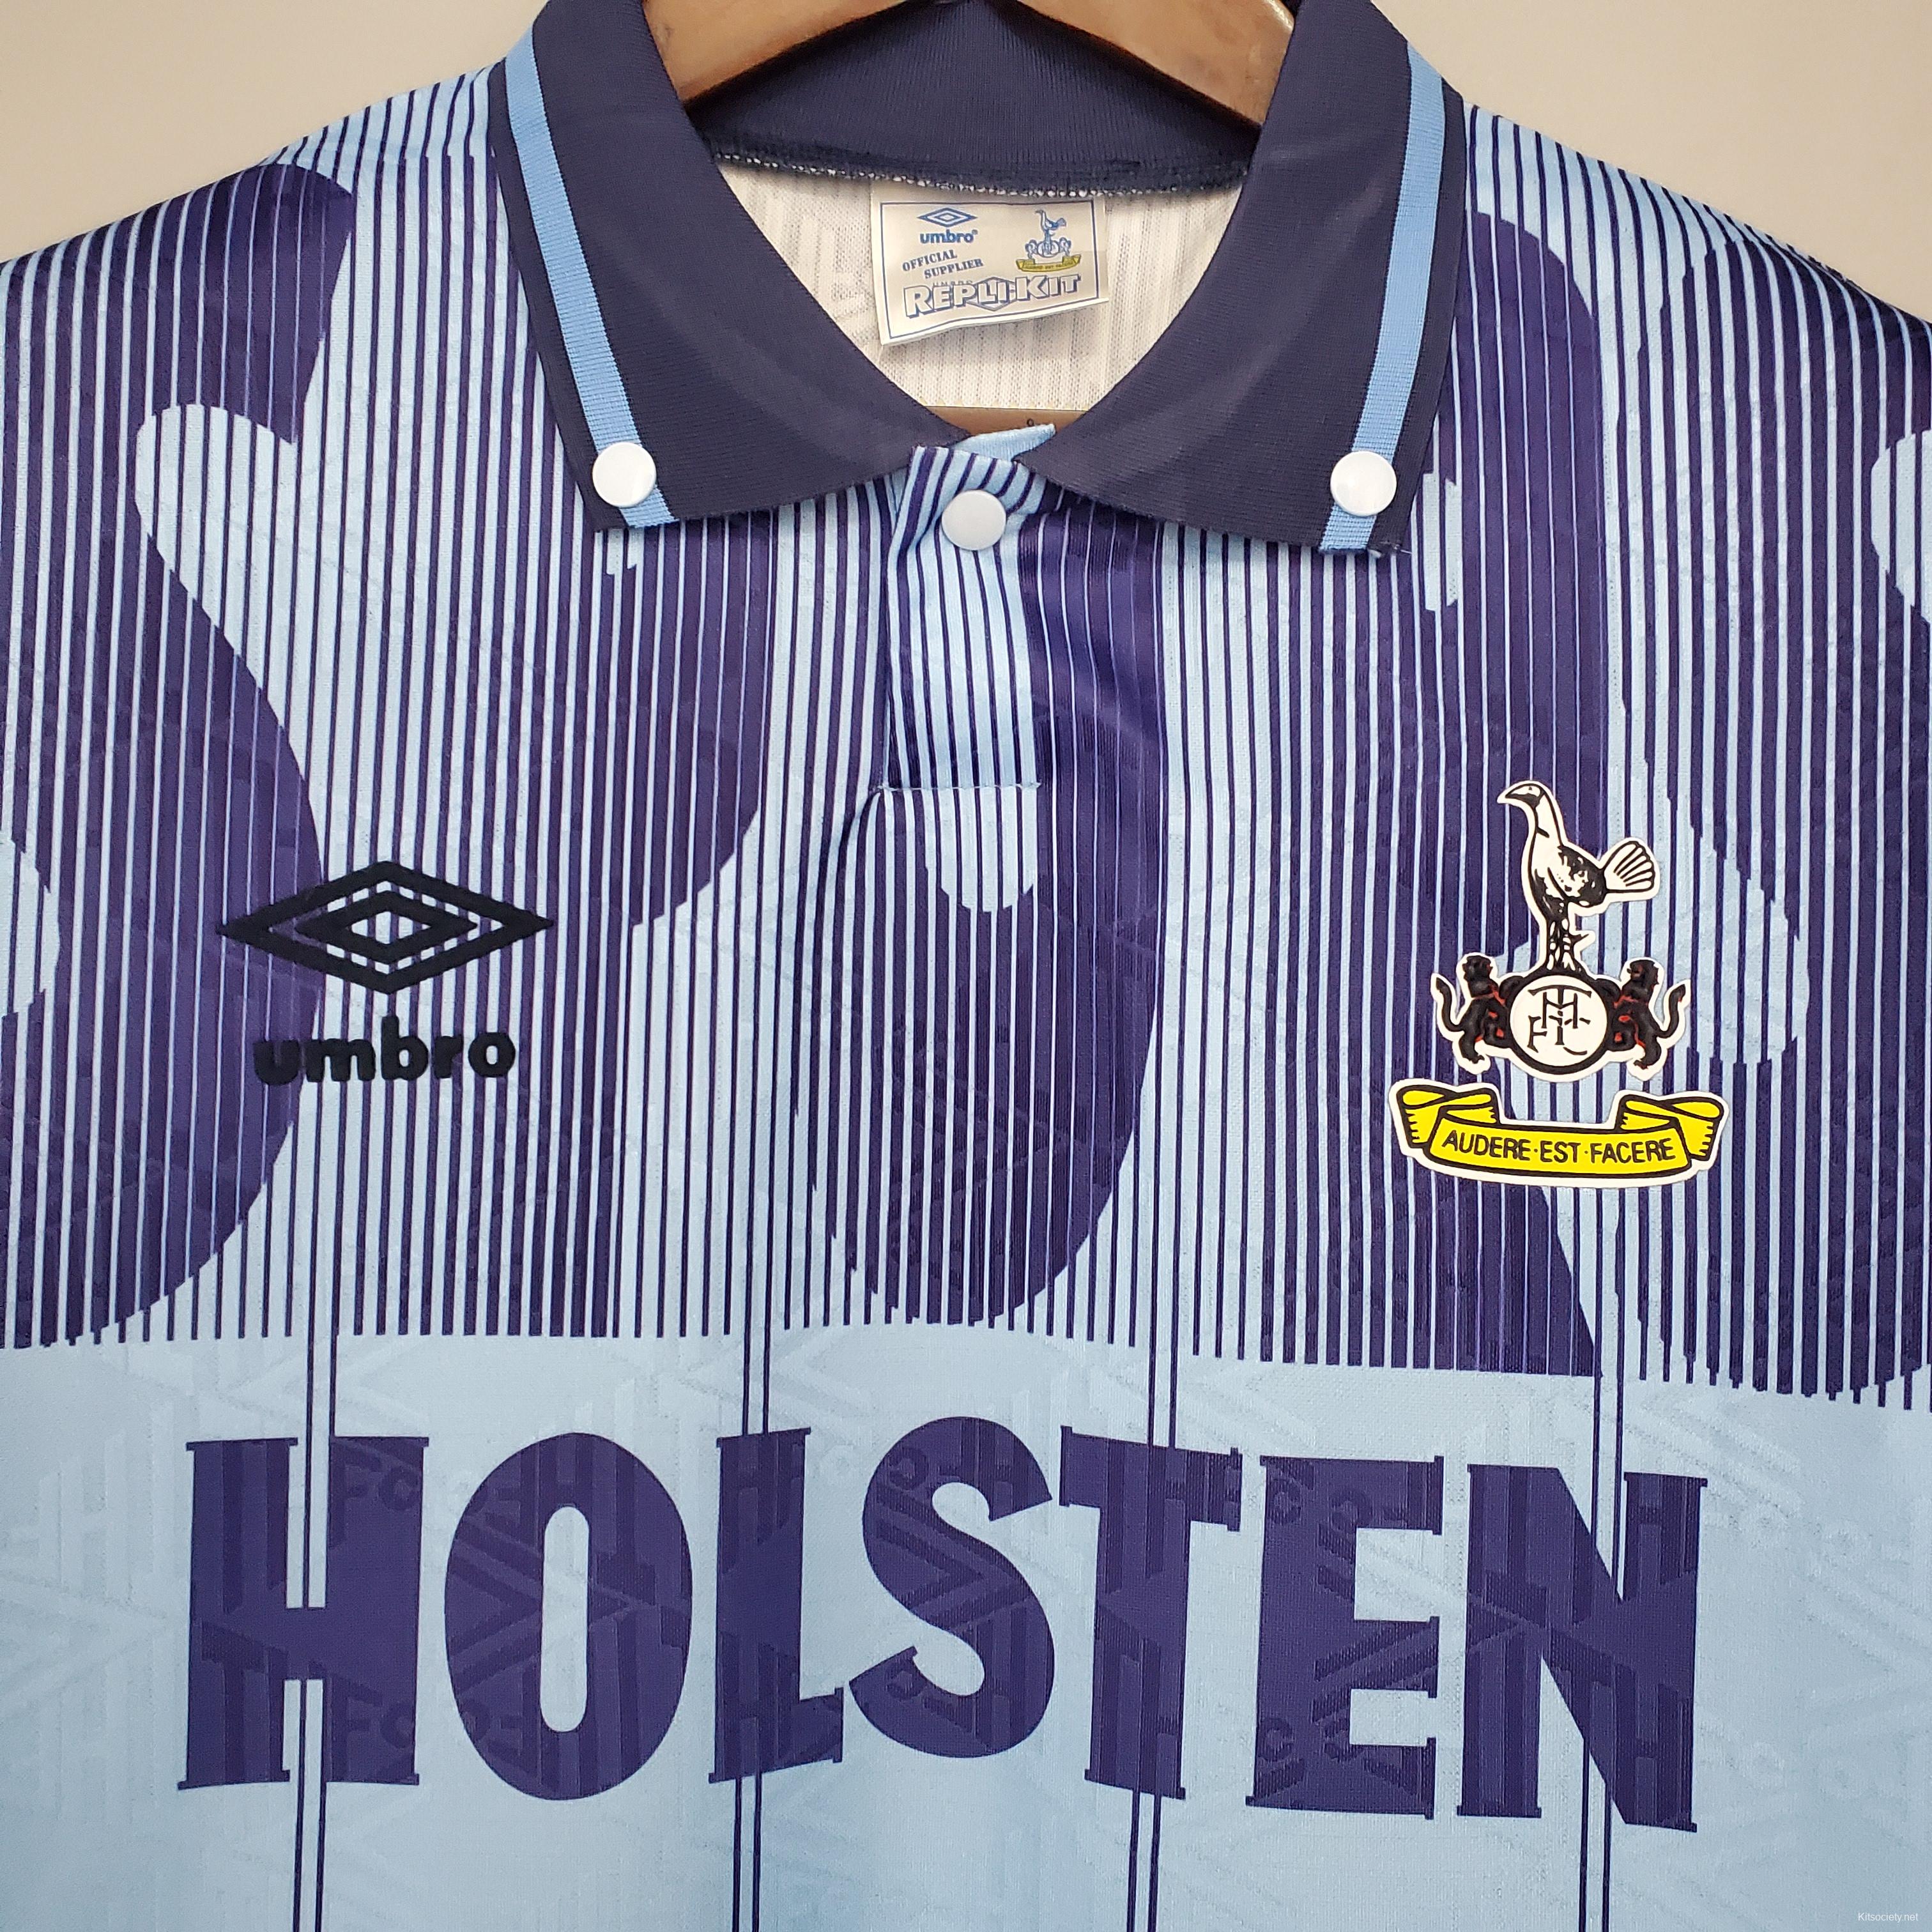 Tottenham Hotspur home shirt 1991-1993 in XL